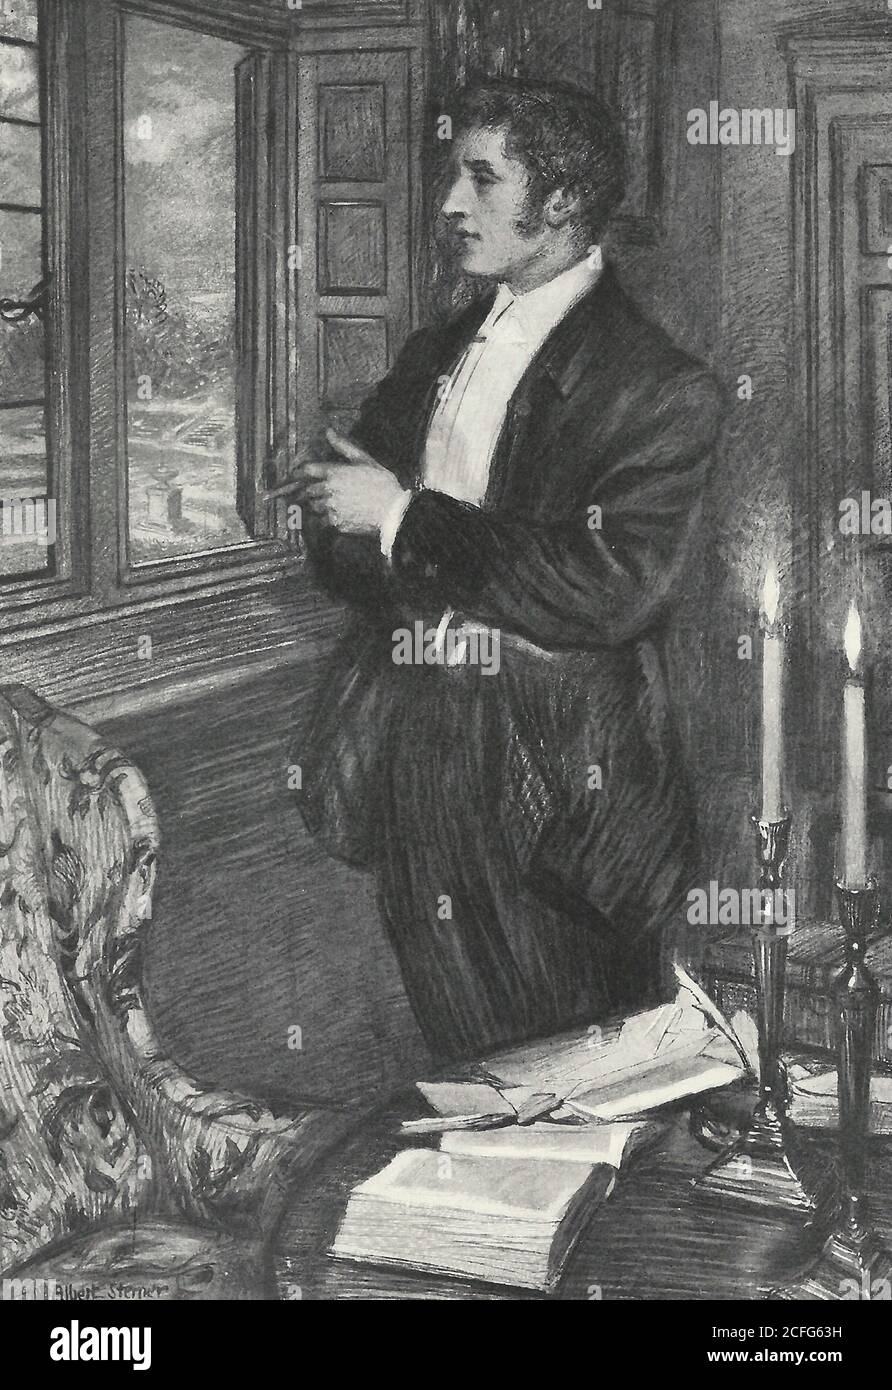 Se destacó mirando por la ventana - un hombre mirando fijamente por la ventana, alrededor de 1900 Foto de stock